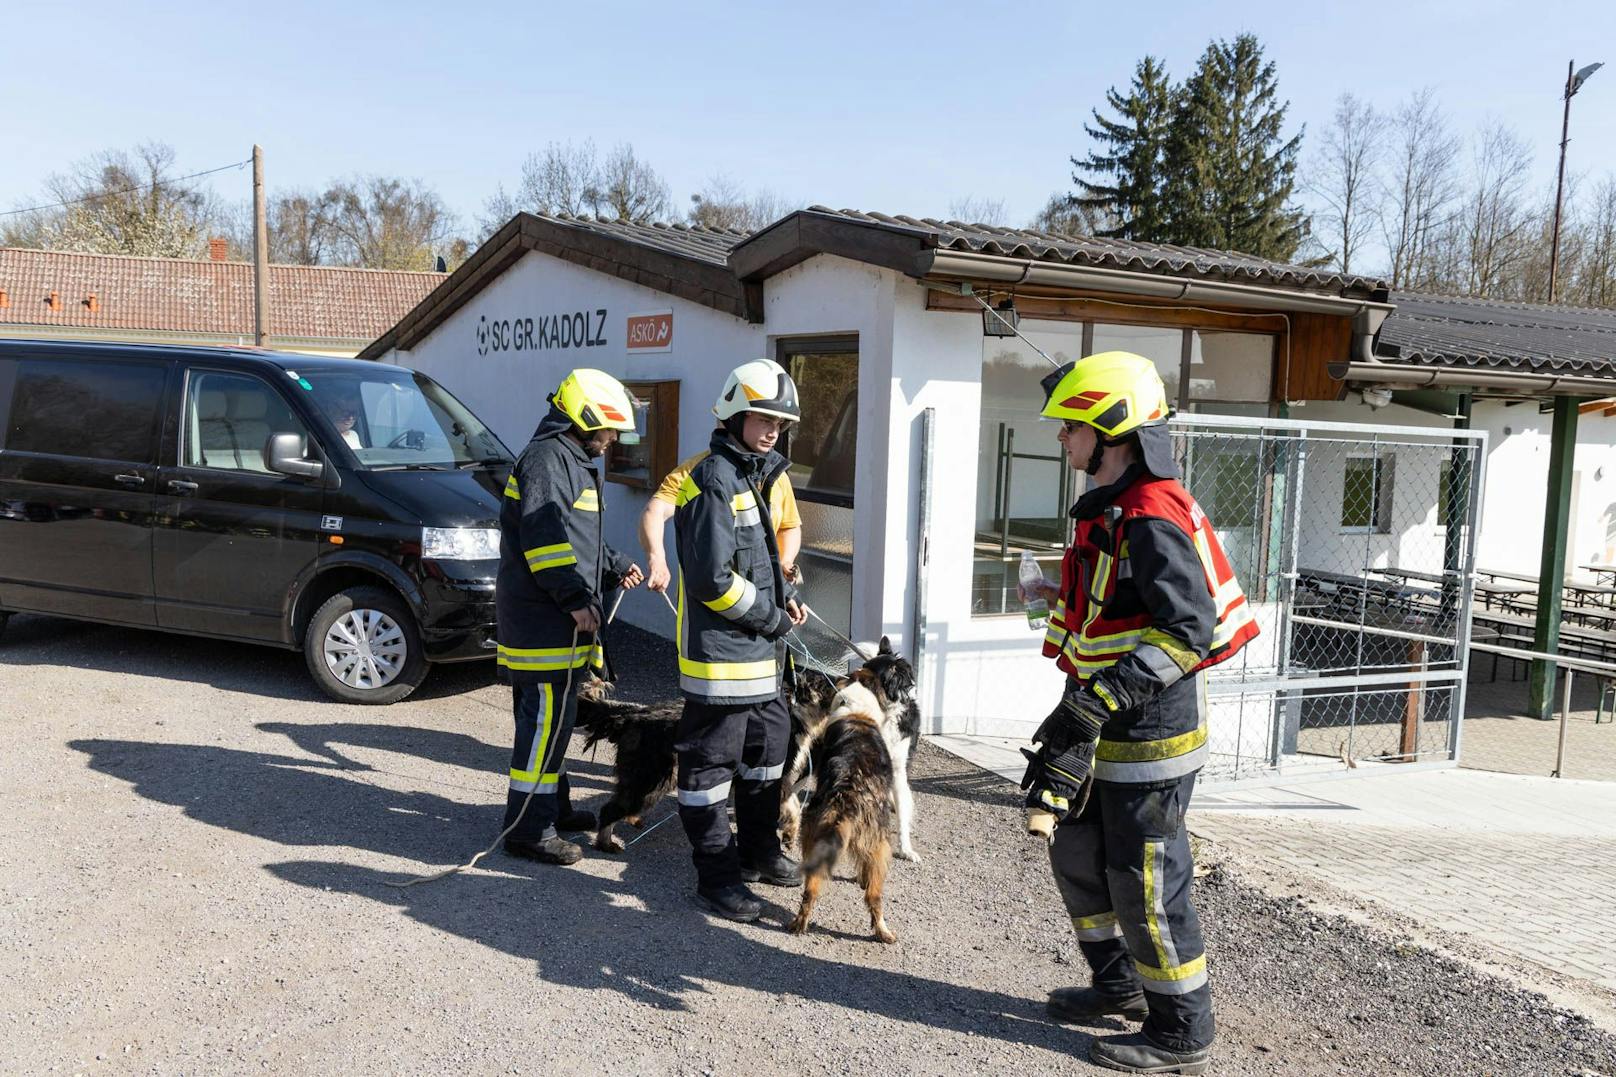 Wohnhausbrand in Seefeld-Kadolz: Die Feuerwehr im Einsatz